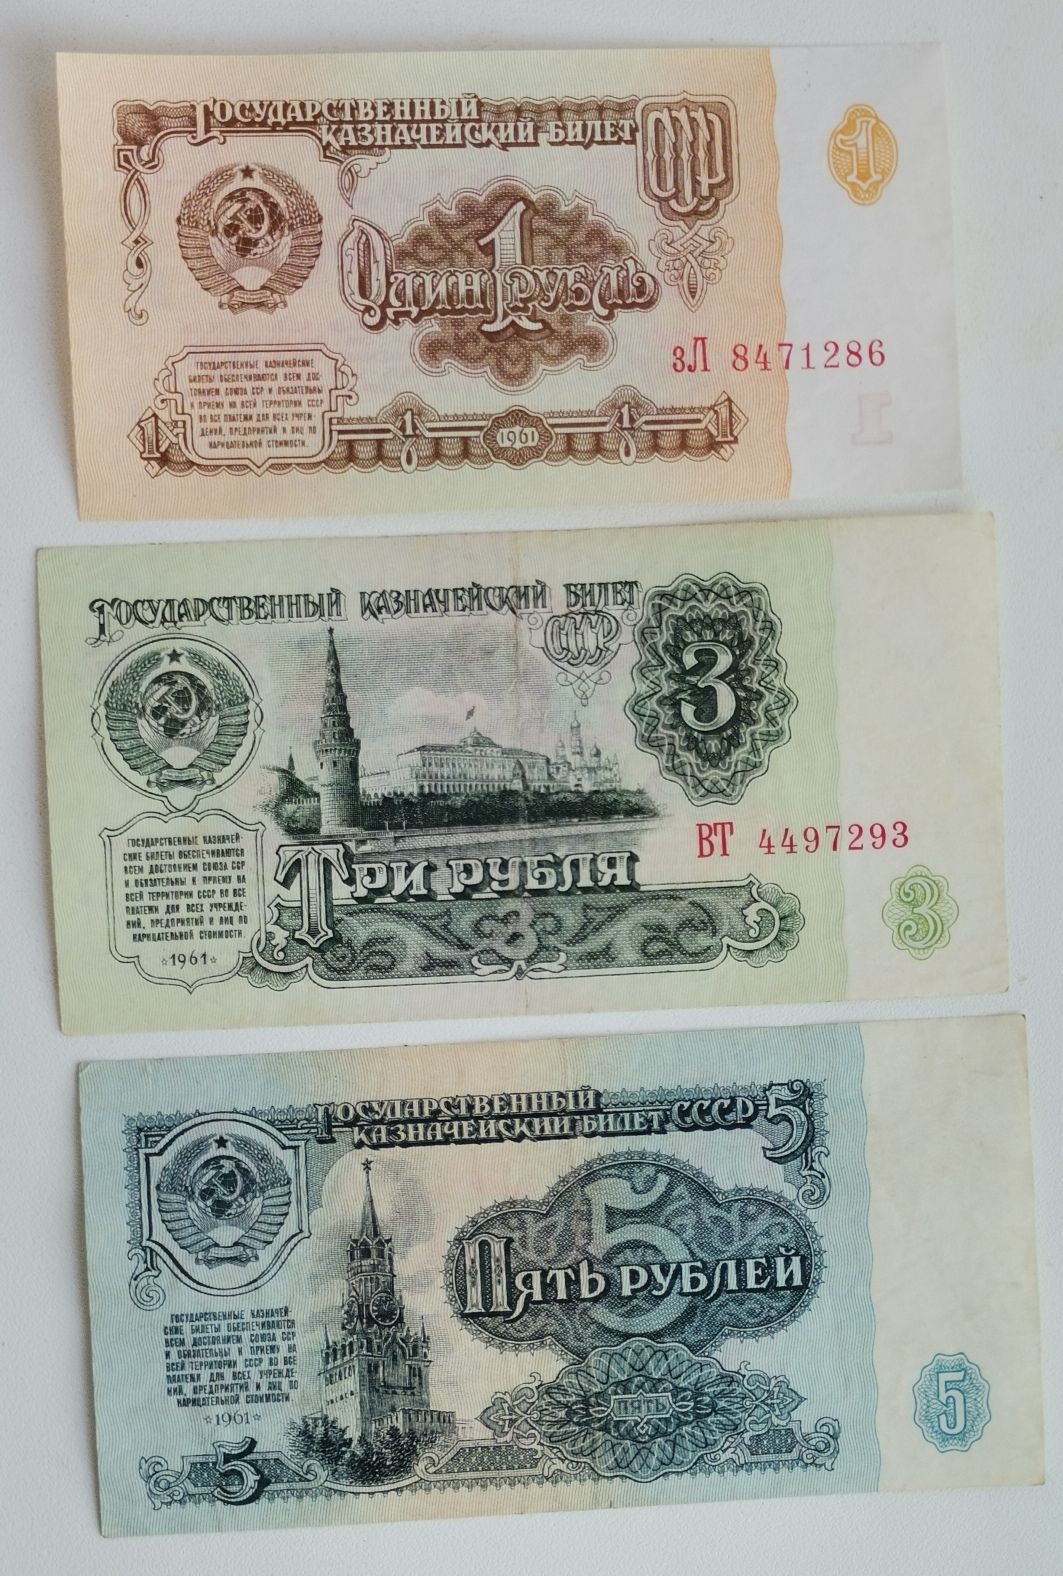 5 рублей unc. Банкноты СССР до 1961 года. 1 Рубль UNC. Купюры СССР 1961 года сом. Особенности купюры.